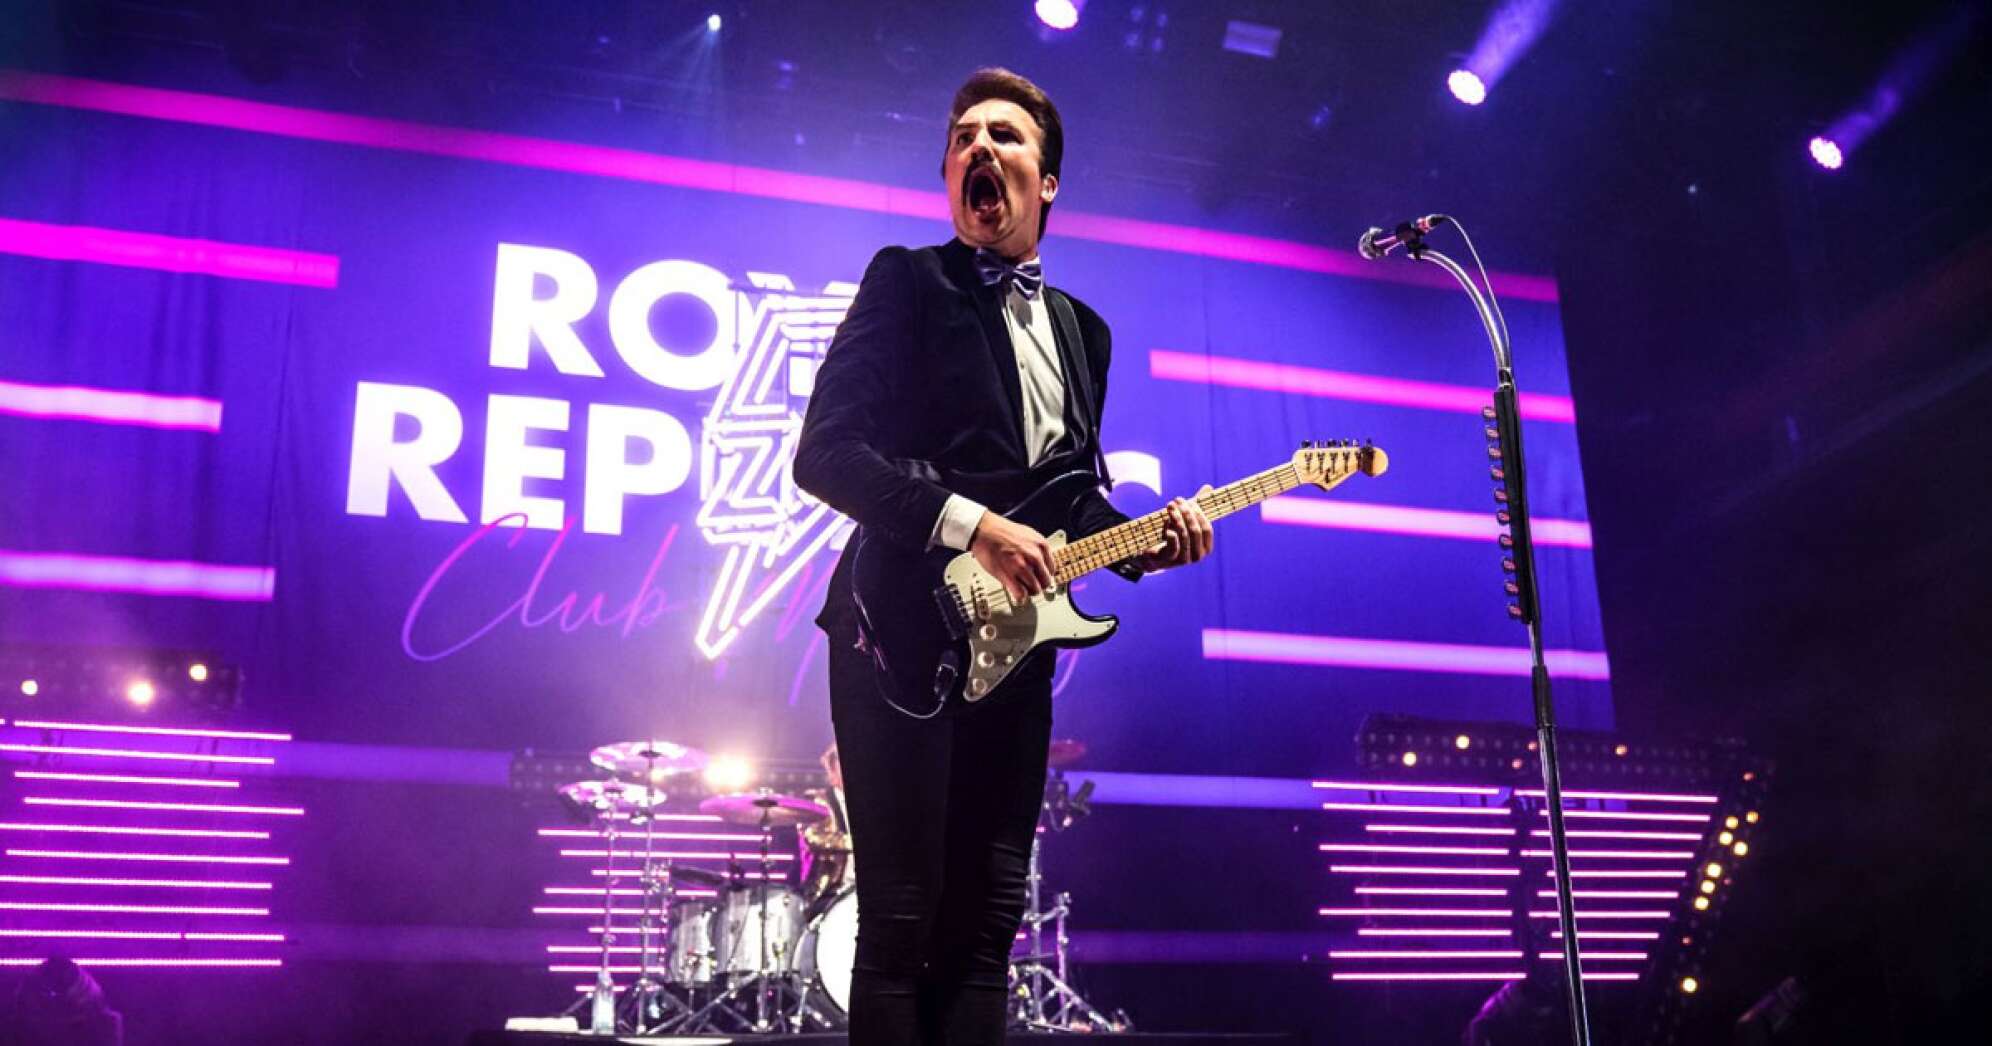 Adam Grahn von "Royal Republic" spielt Gitarre und singt bei einer Live-Show